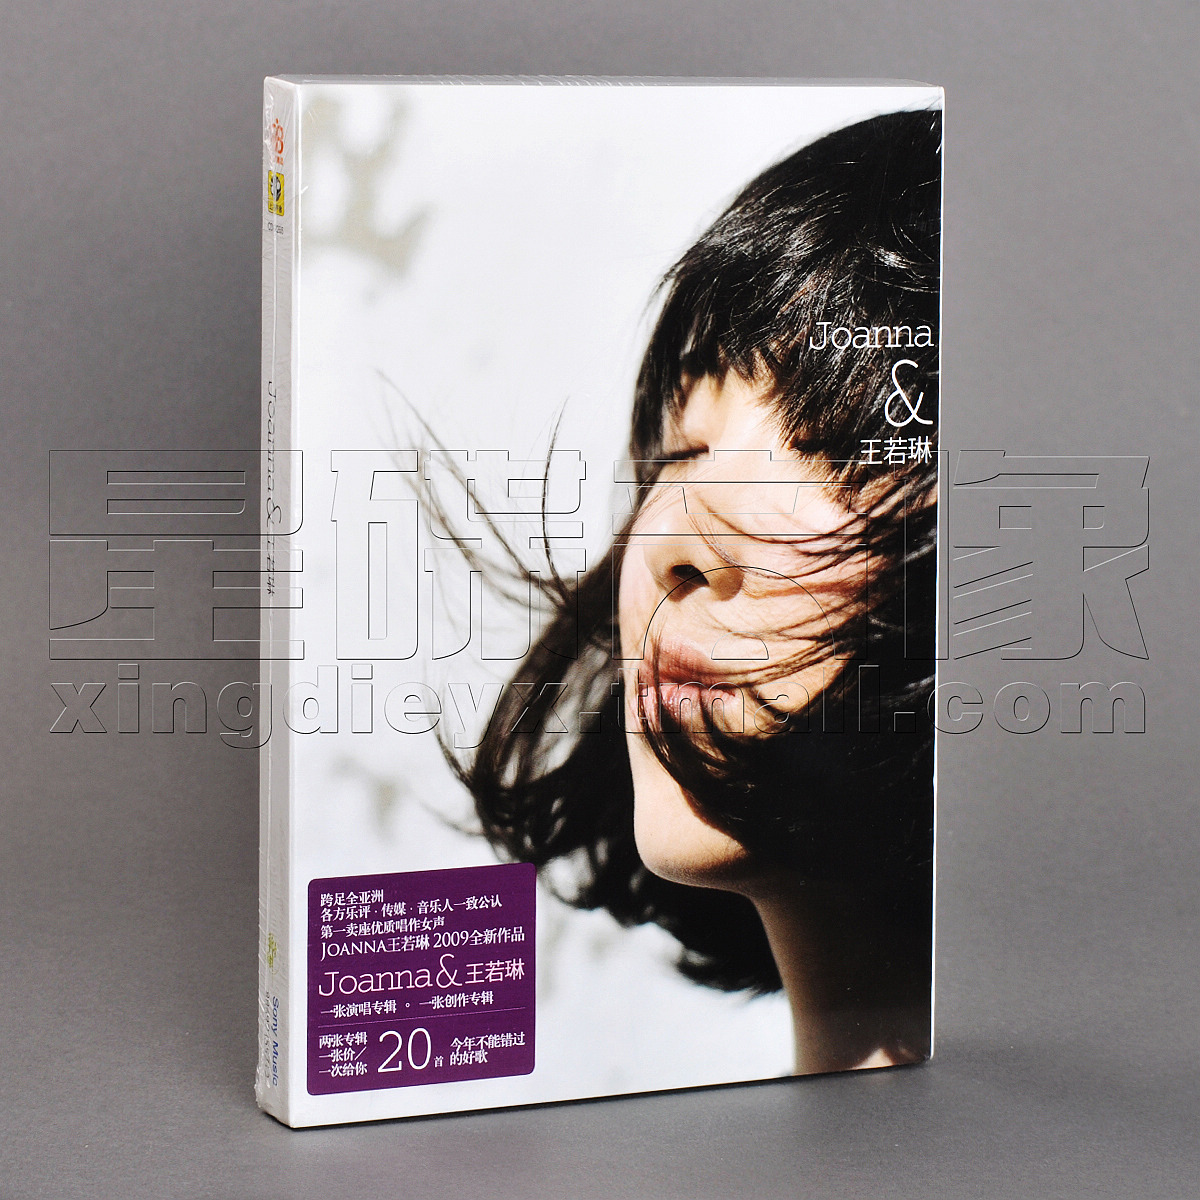 正版王若琳 同名专辑 2CD Joanna & 王若琳 唱片碟片 音乐/影视/明星/音像 音乐CD/DVD 原图主图